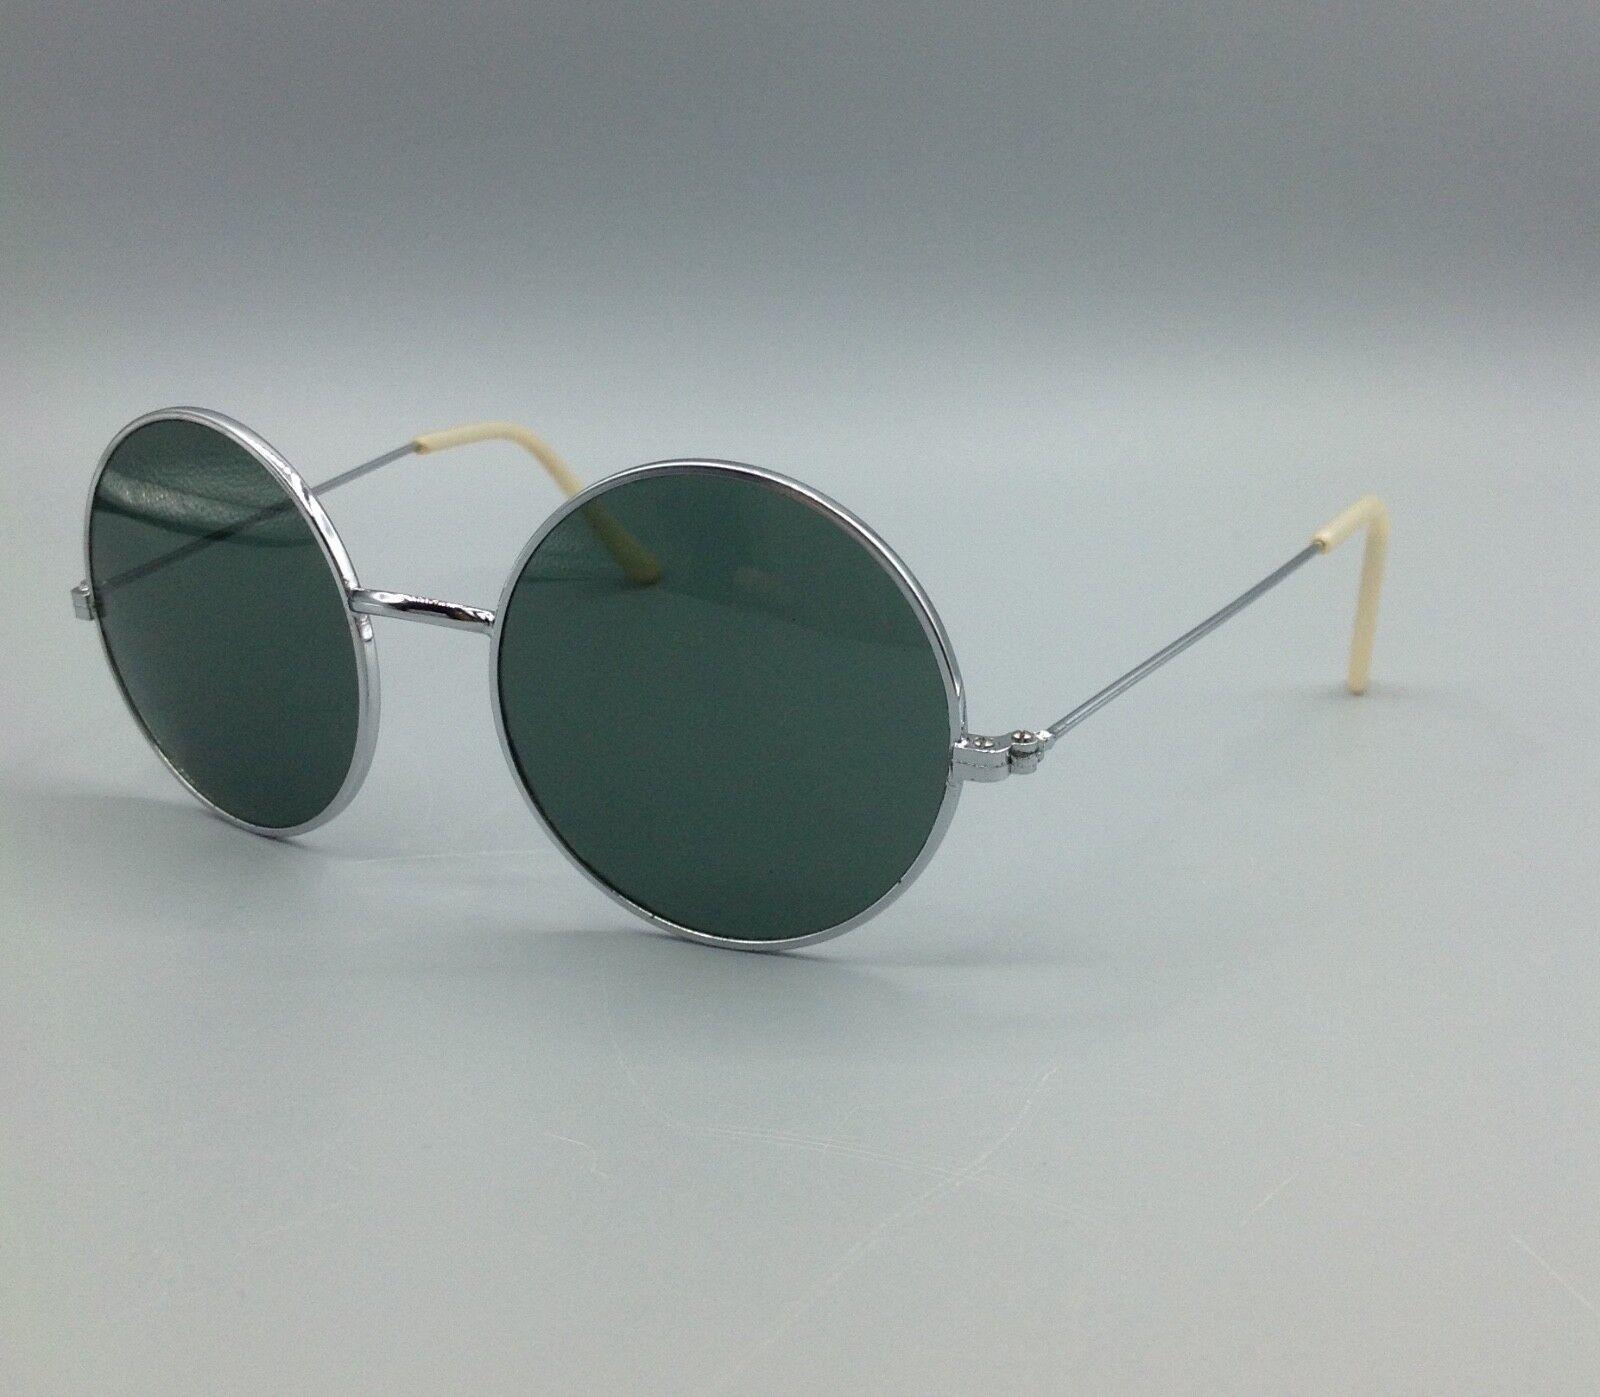 Vintage sunglasses occhiale da sole sonnenbrillen lunettes